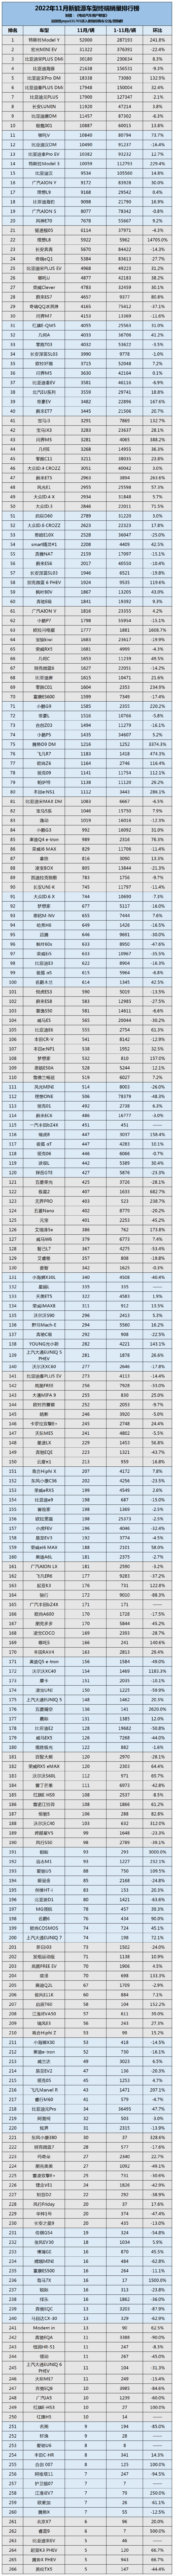 2022年11月中国新能源汽车终端销量排行榜总榜（所有车型在列）